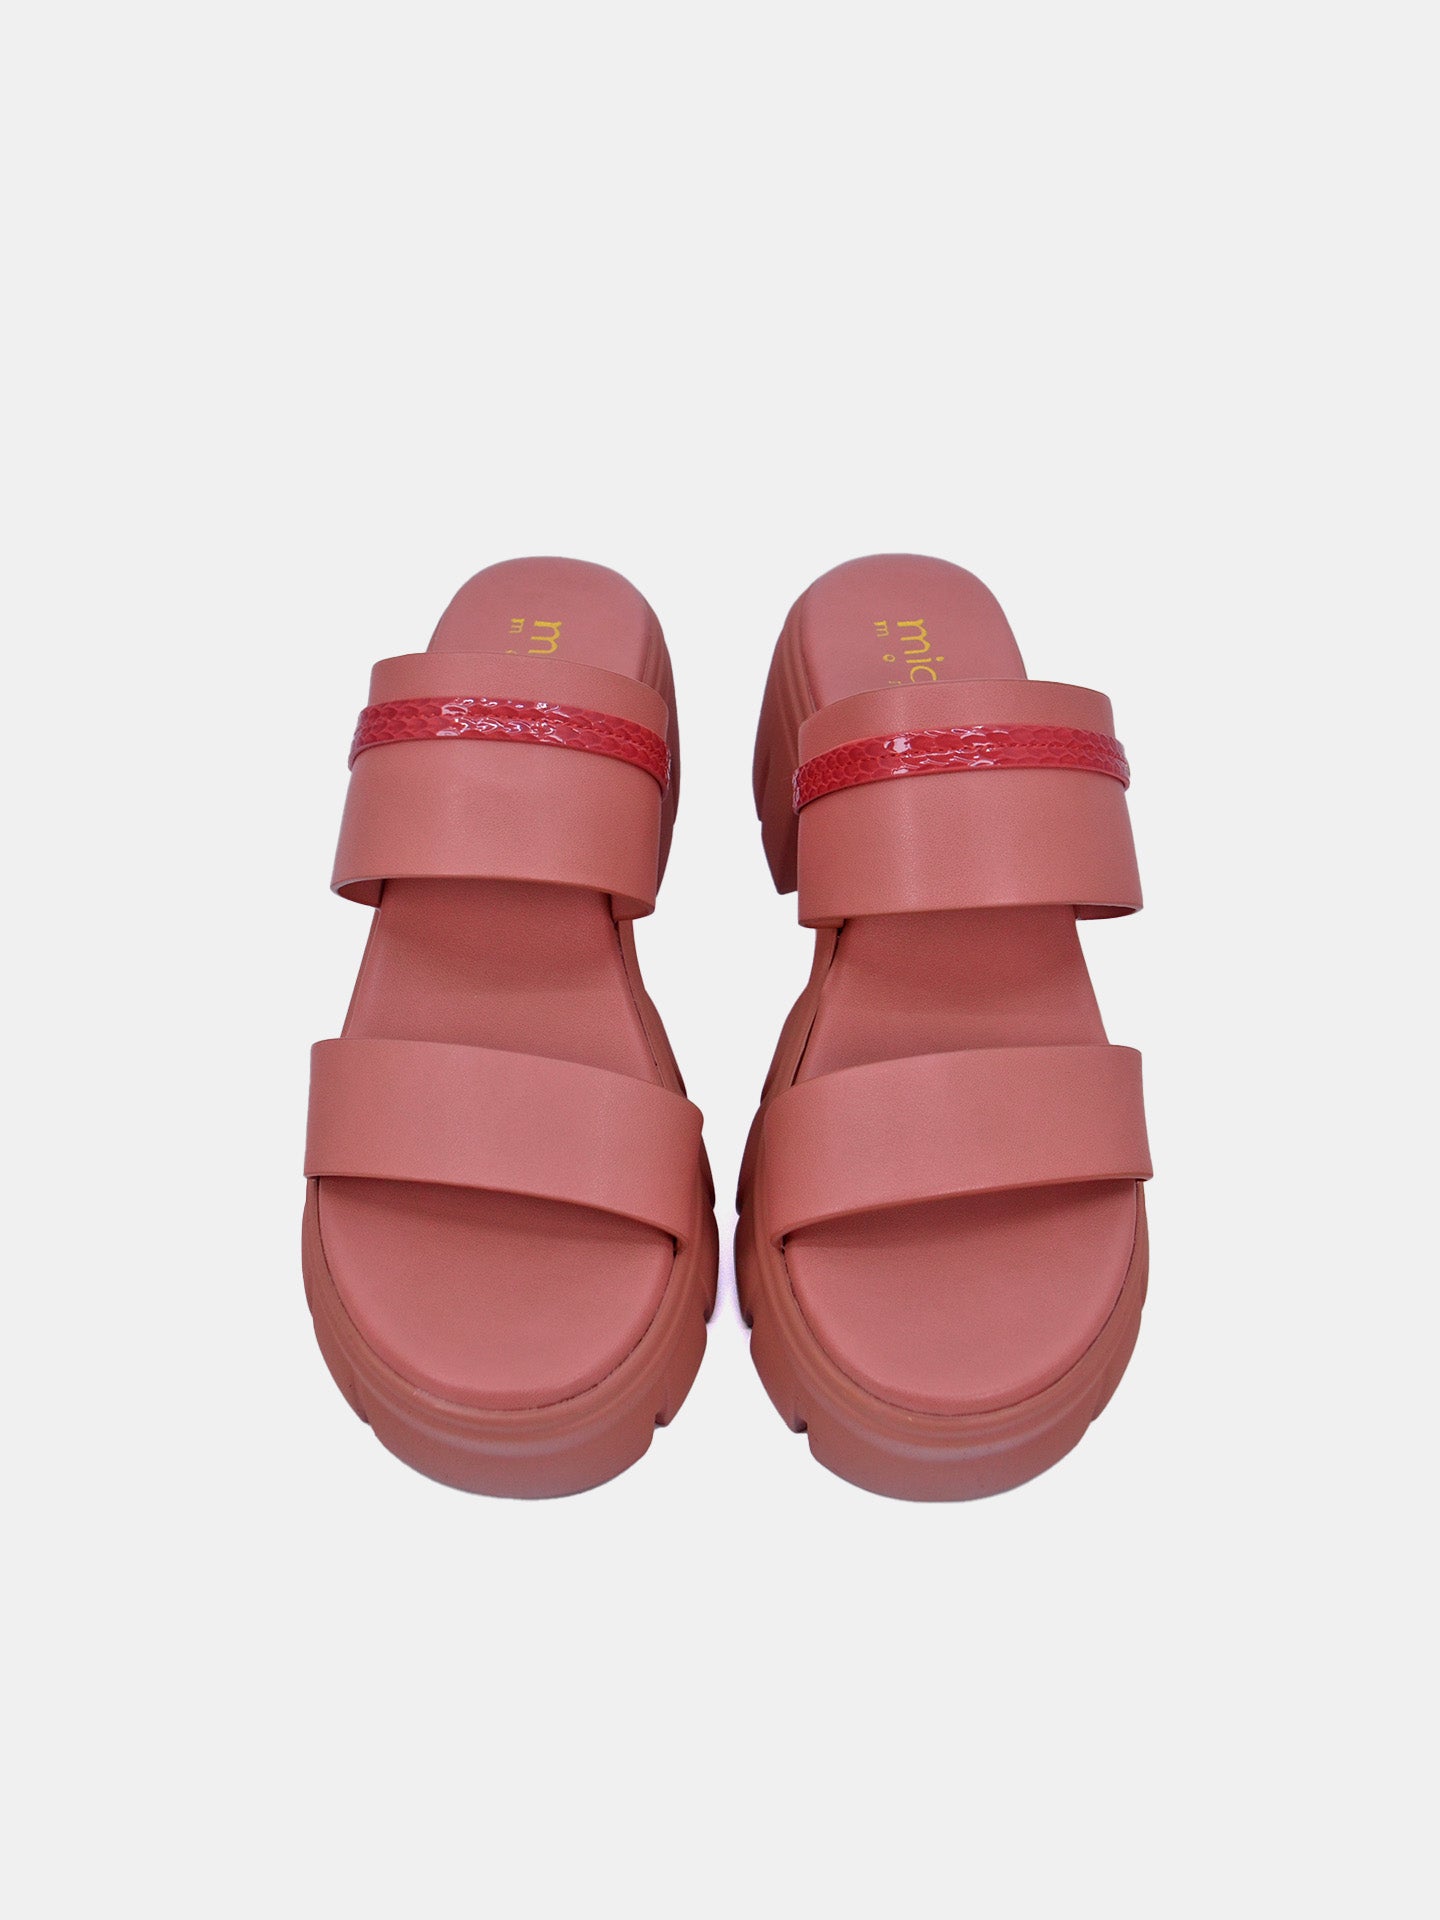 Michelle Morgan 214RJ635 Women's Sandals #color_Pink